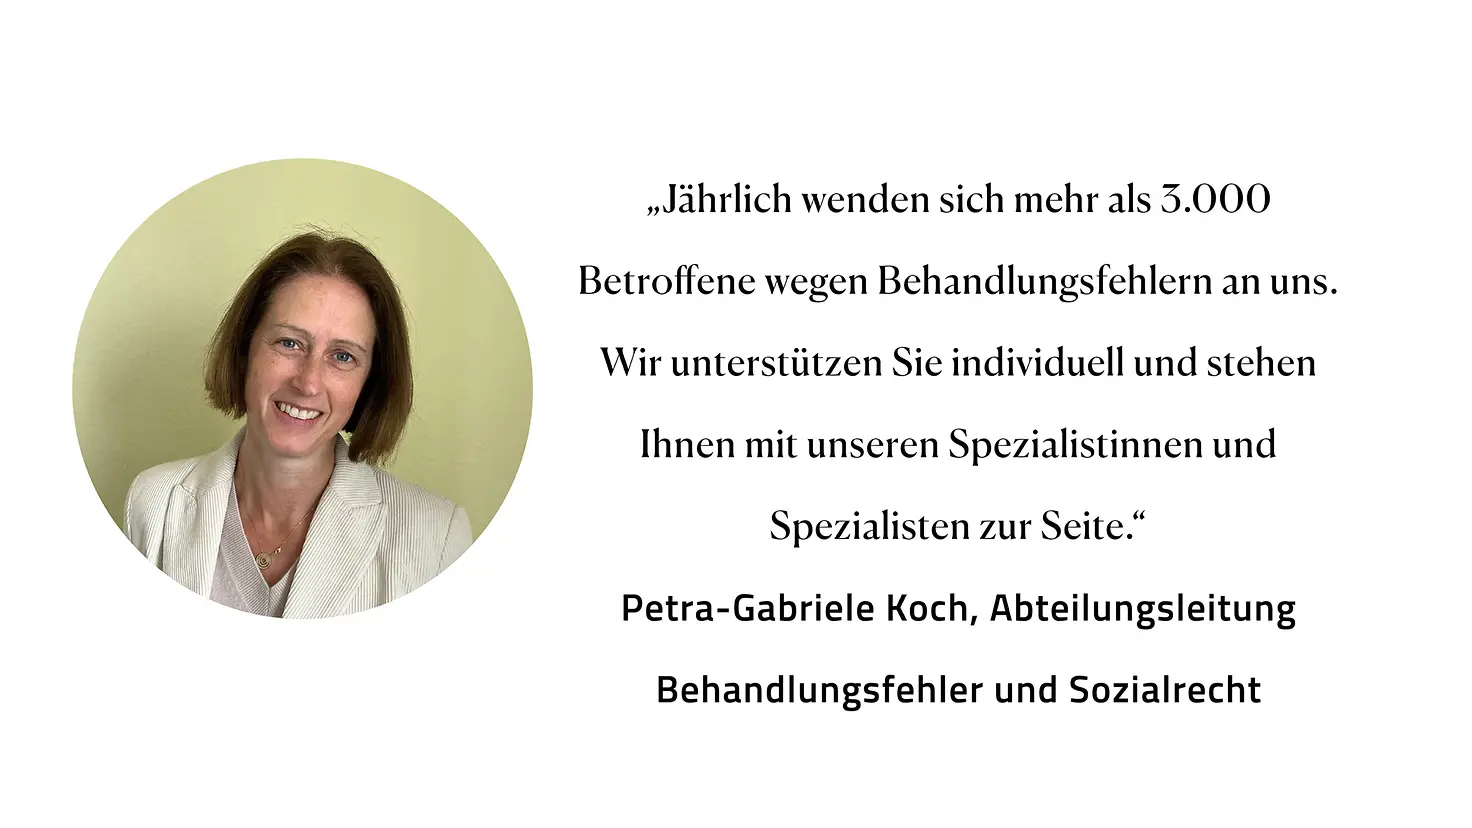 Zitat Petra-Gabriele Koch, Abteilungsleitung Behandlungsfehler und Sozialrecht: "Jährlich wenden sich mehr als 3.000 Betroffene wegen Behandlungsfehlern an uns. Wir unterstützen Sie individuell und stehen Ihnen mit unseren Spezialistinnen und Spezialisten zur Seite."